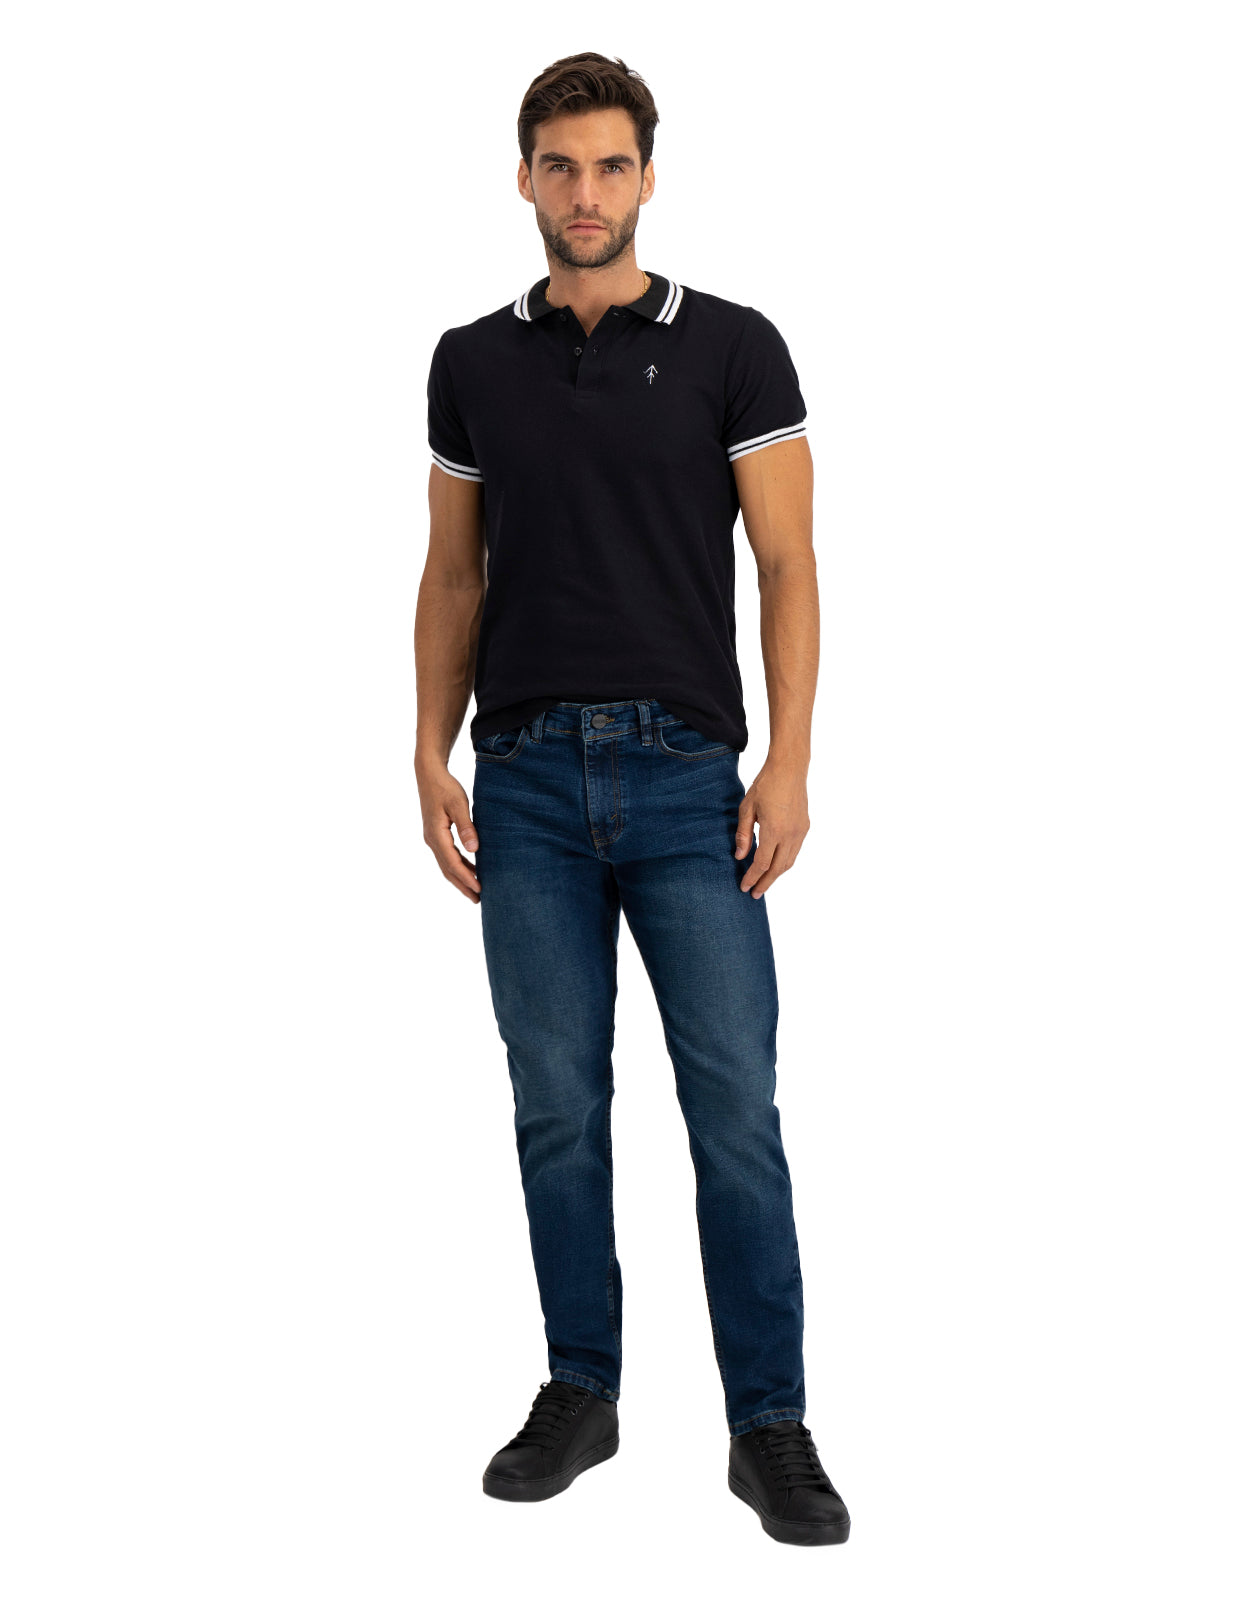 Jeans de Mezclilla Premium Slim Fit - Luanda